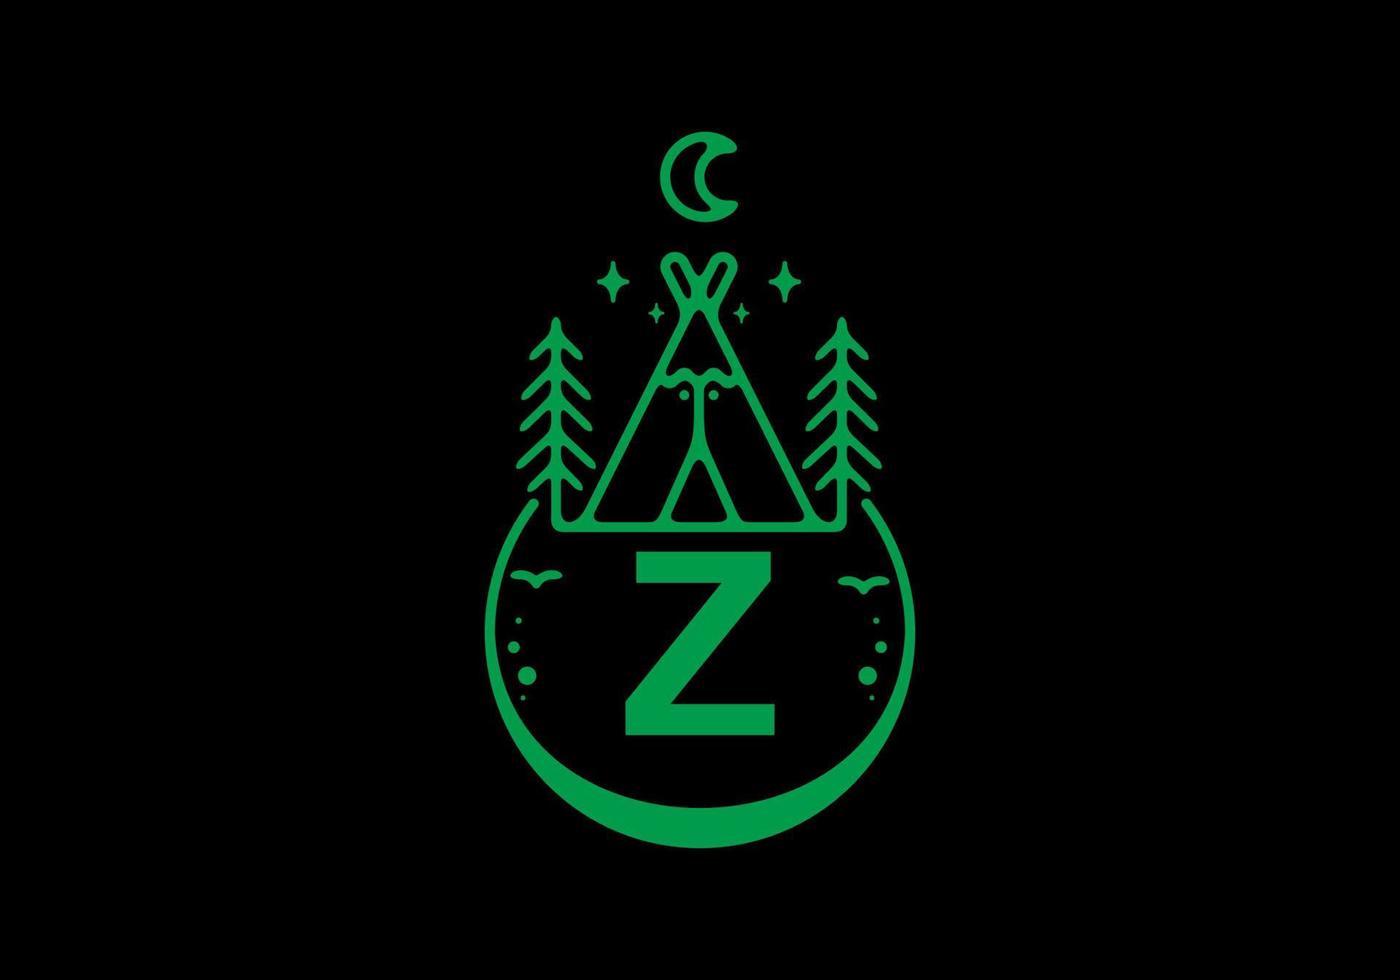 grüne Farbe des Anfangsbuchstabens z im Campingkreisabzeichen vektor